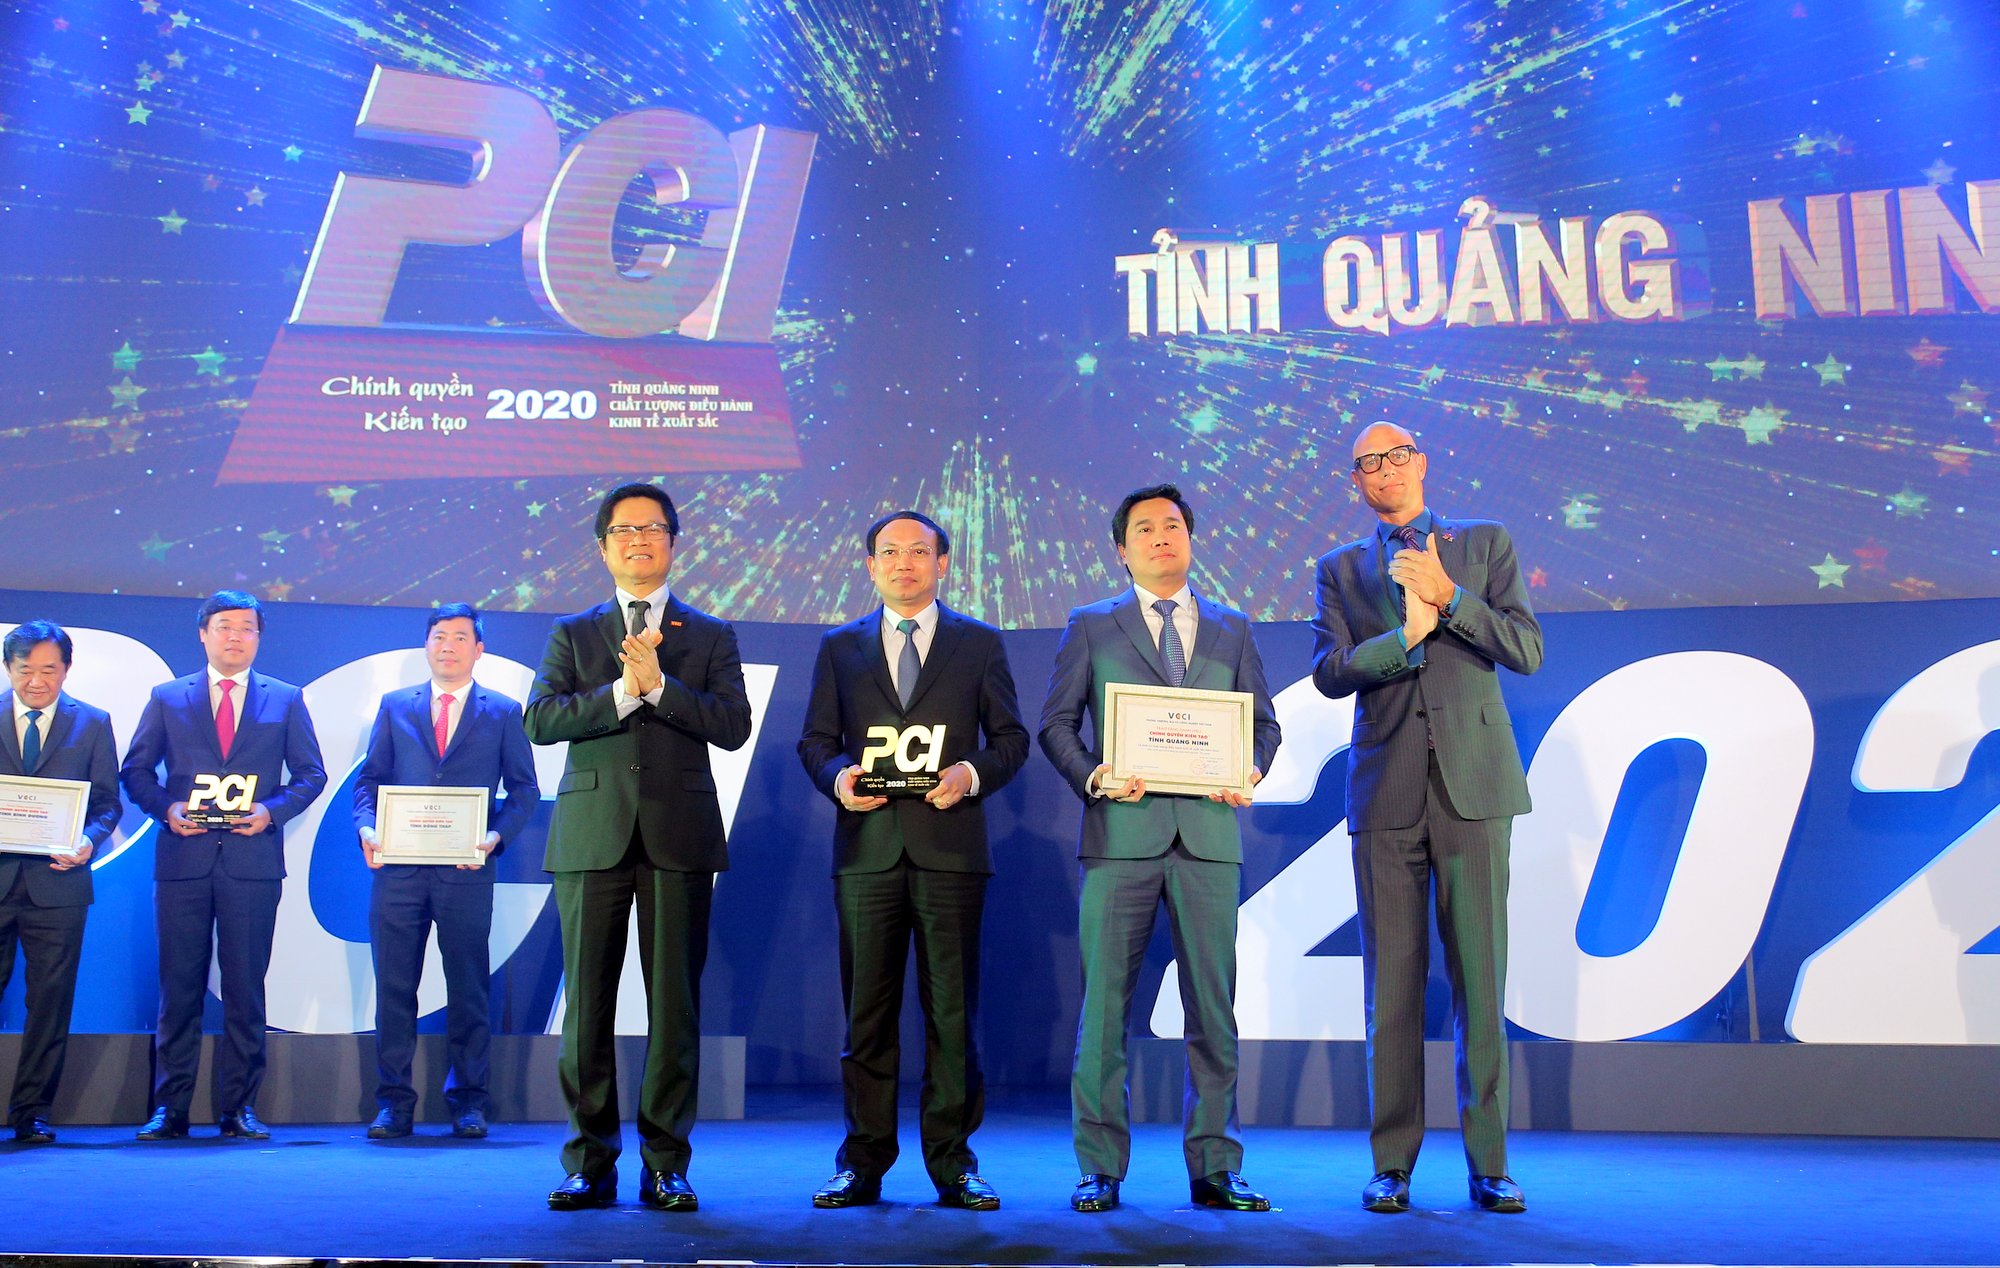 Lãnh đạo tỉnh Quảng Ninh nhận Cúp quán quân PCI năm 2020